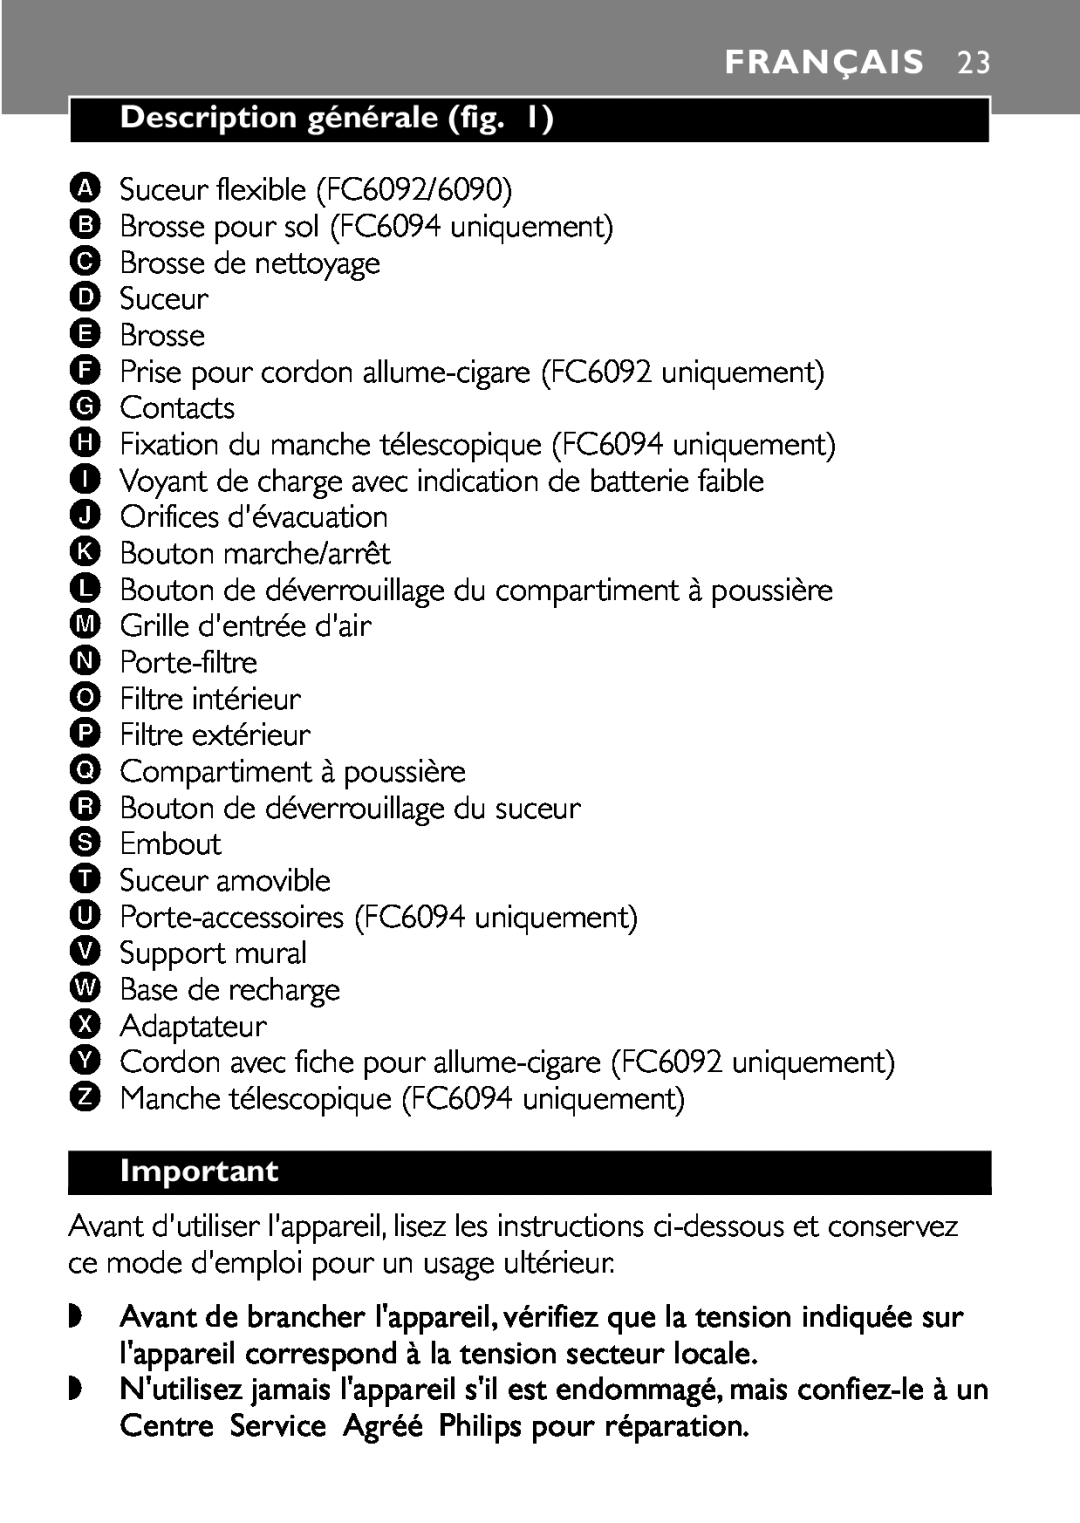 Philips FC6094, FC6092, FC6090 manual Français, Description générale fig 